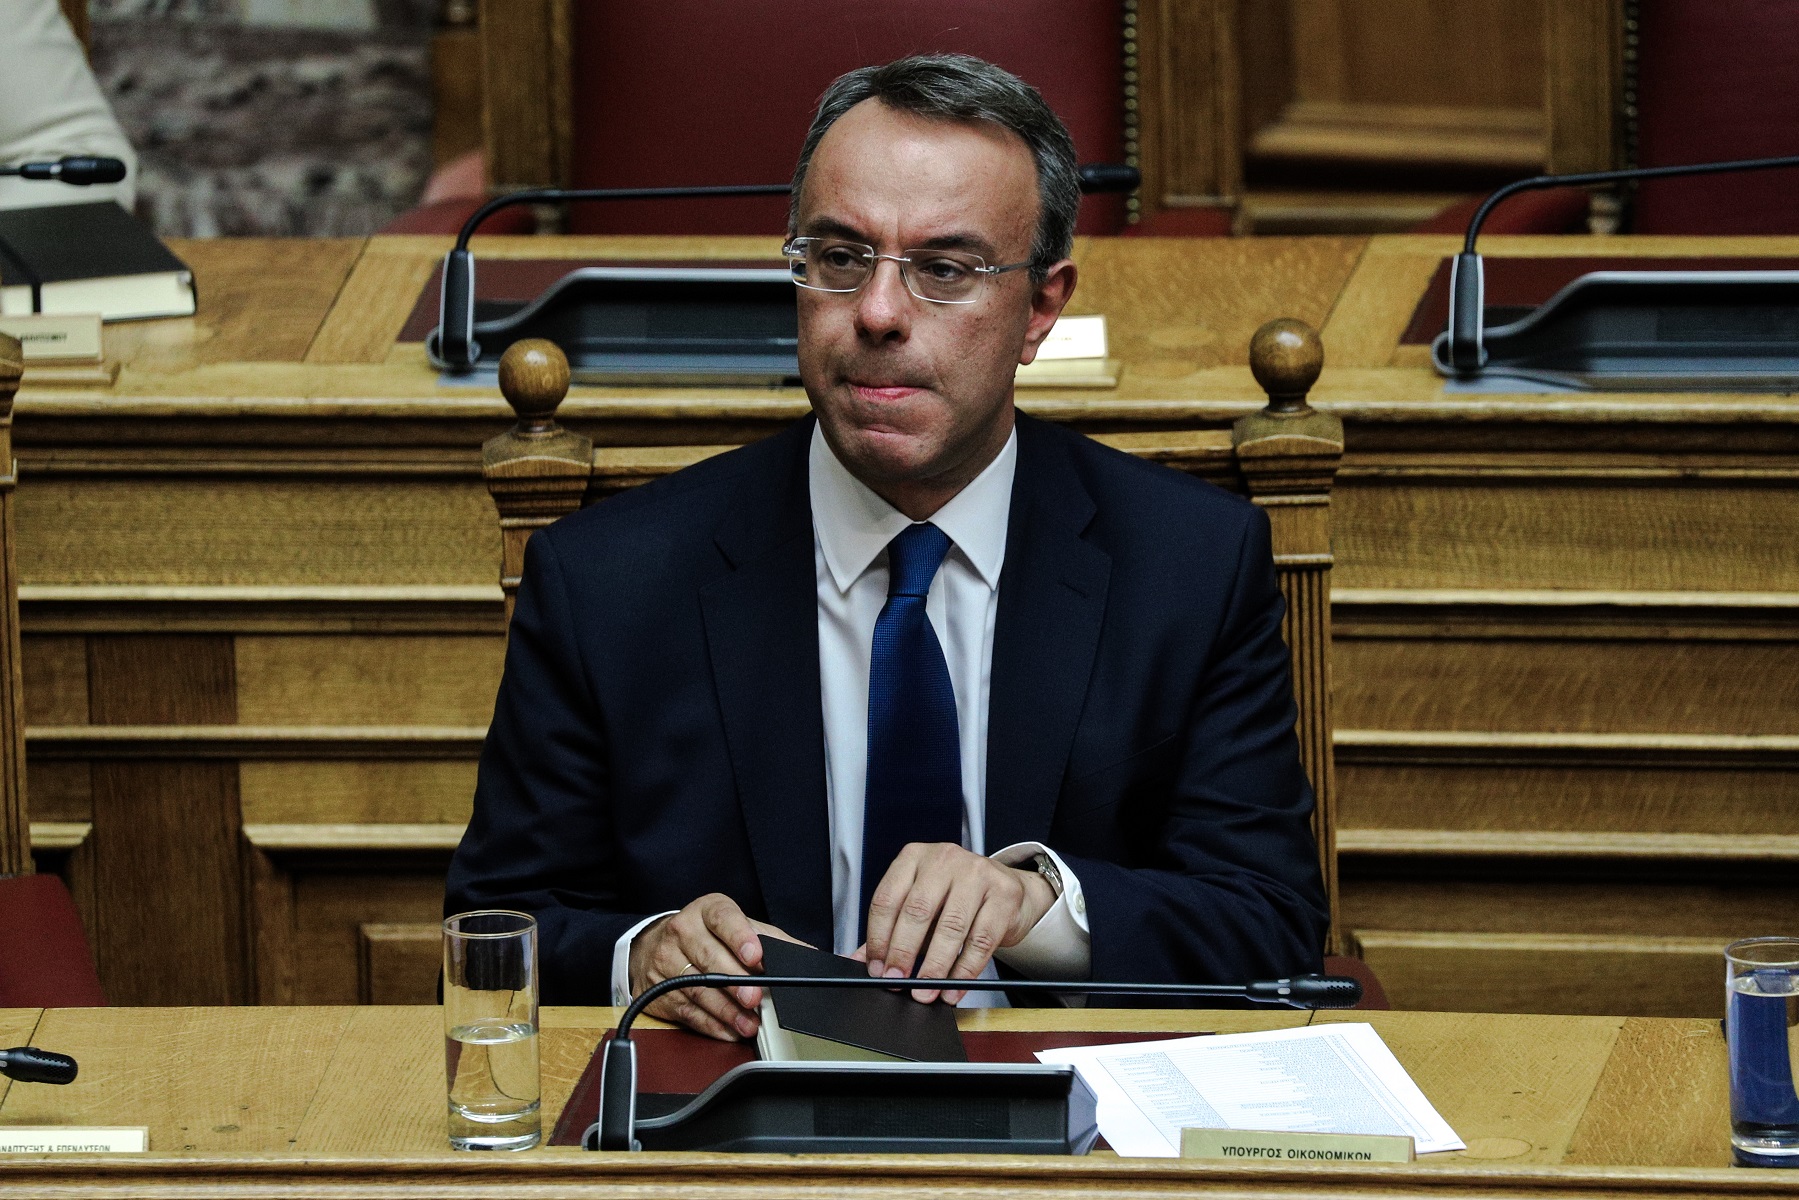 Χ. Σταϊκούρας: «Ο κορωνοϊός θέτει και την ελληνική οικονομία ενώπιον μίας δύσκολης κατάστασης»